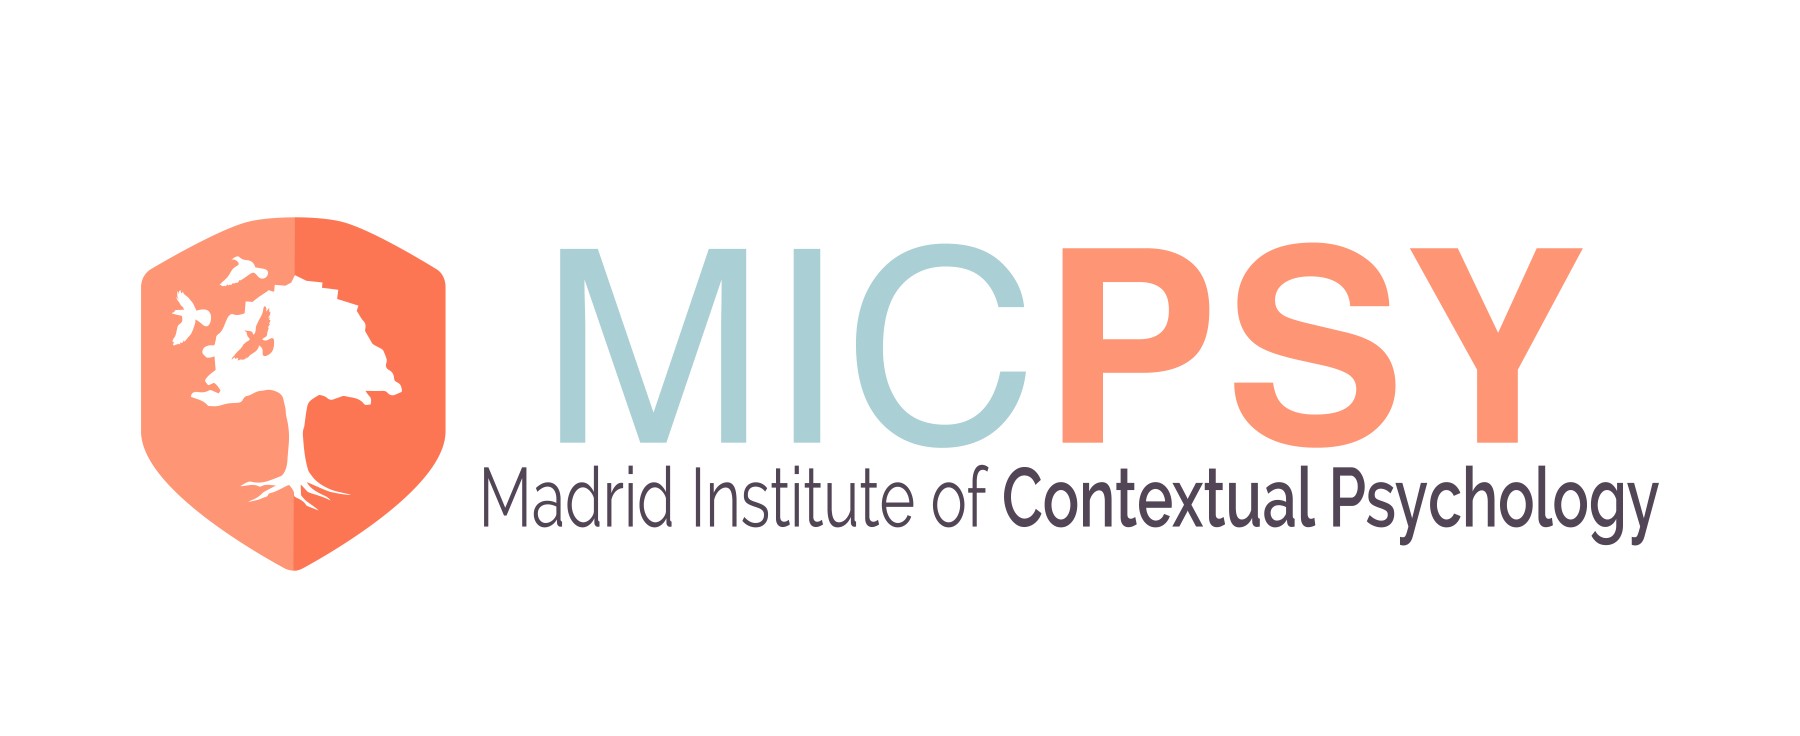 Máster en Periodismo de Investigación, Datos y Visualización - Instituto de Psicología Contextual Madrid - MICPSY